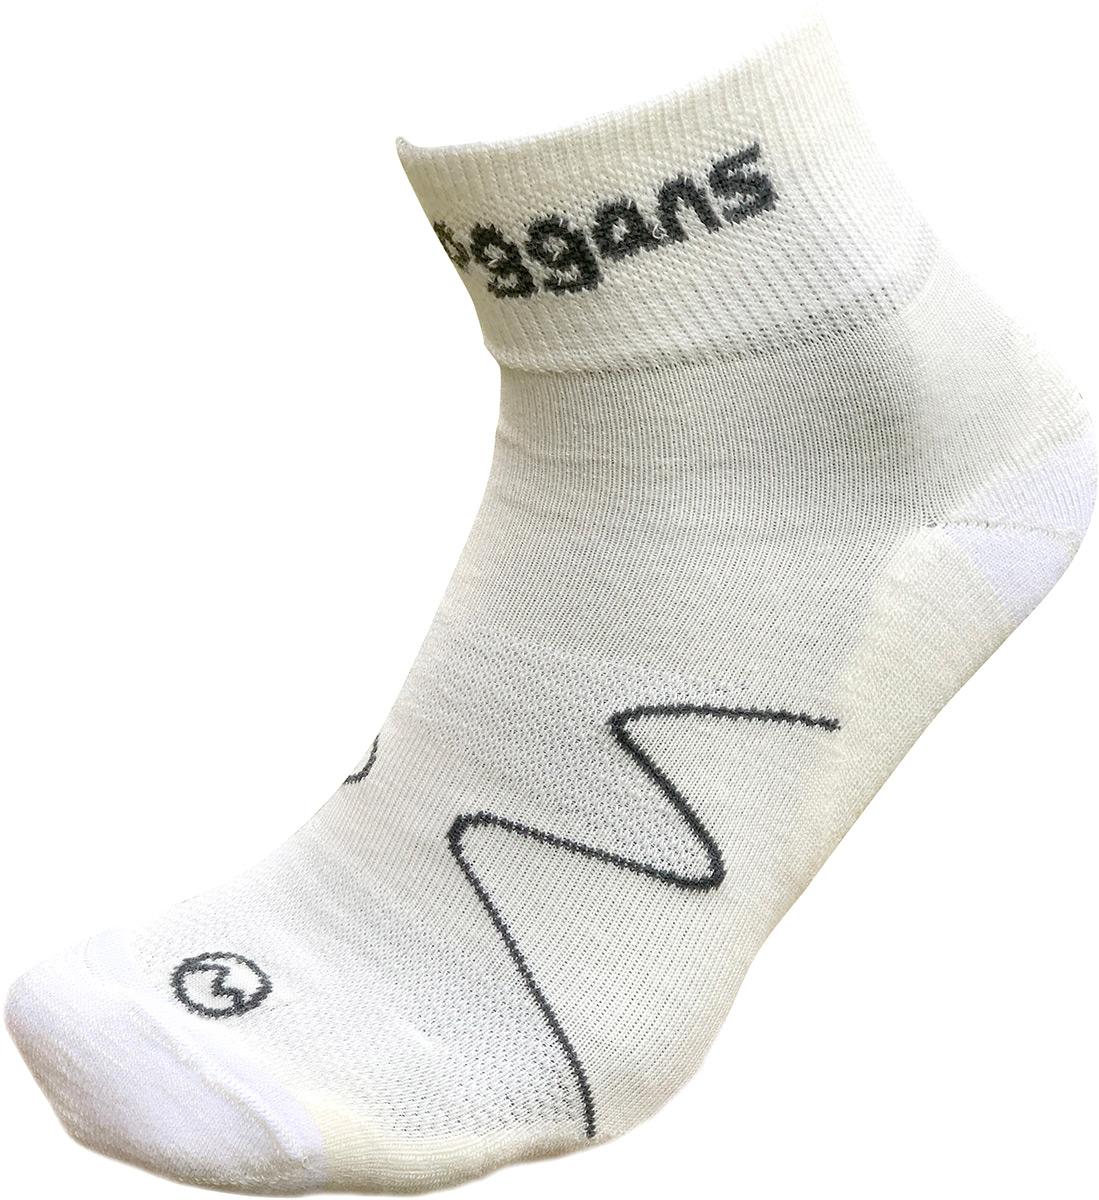 Moggans Merino Ankle Socks - White